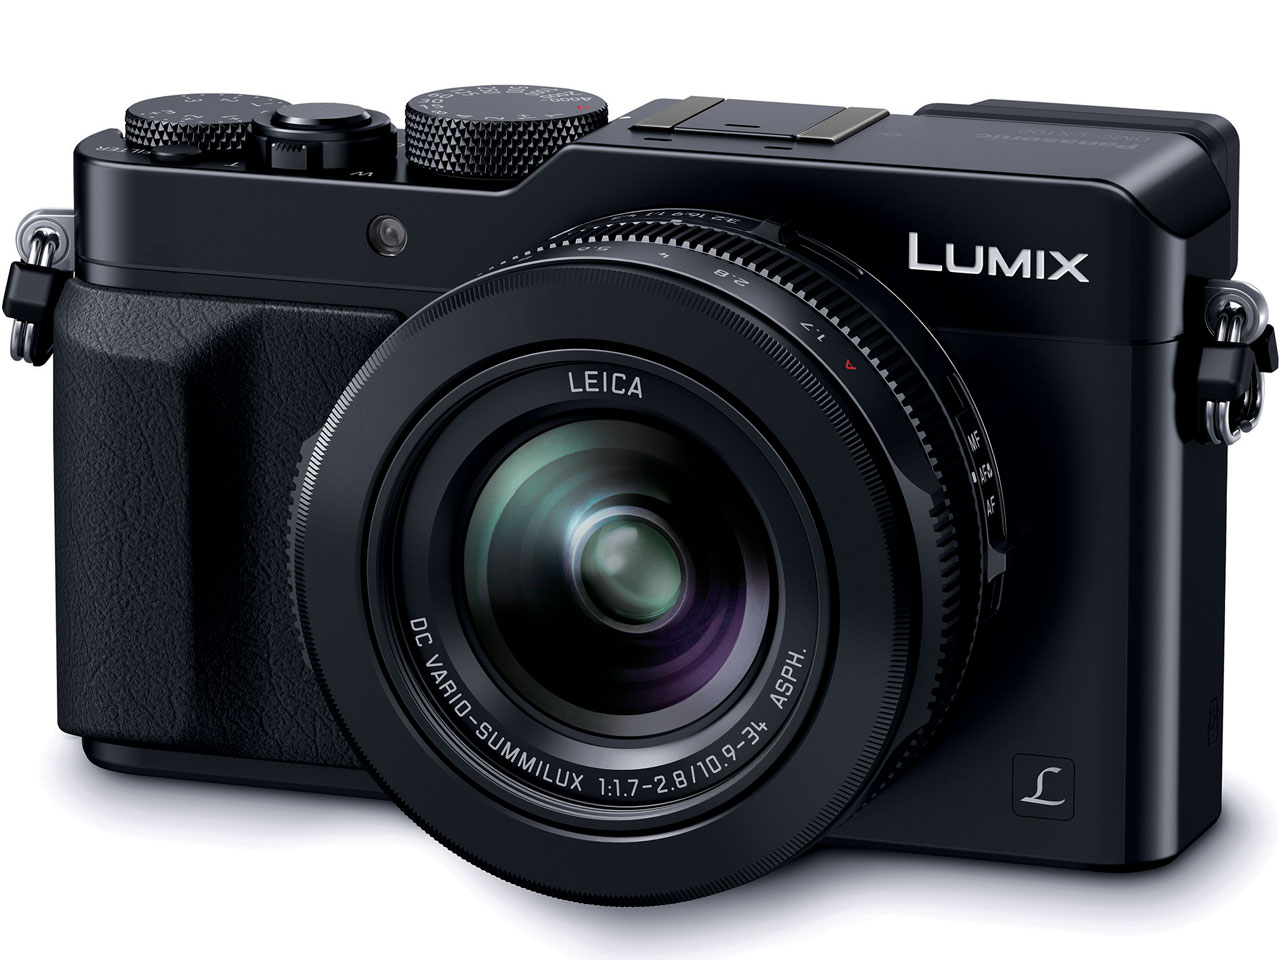 『本体 正面1』 LUMIX DMC-LX100-K [ブラック] の製品画像